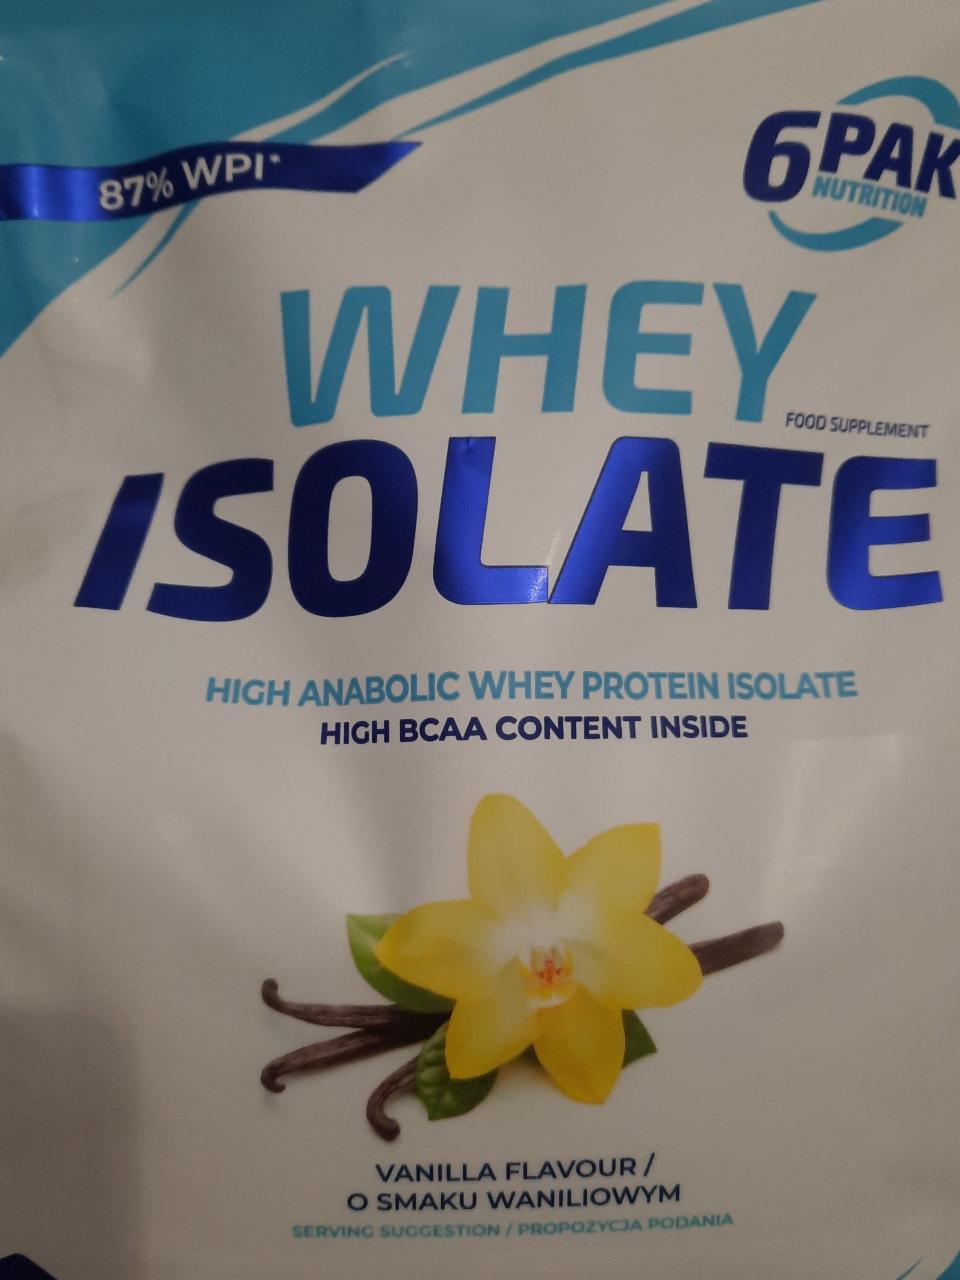 Zdjęcia - Whey Isolate 6pak nutrition